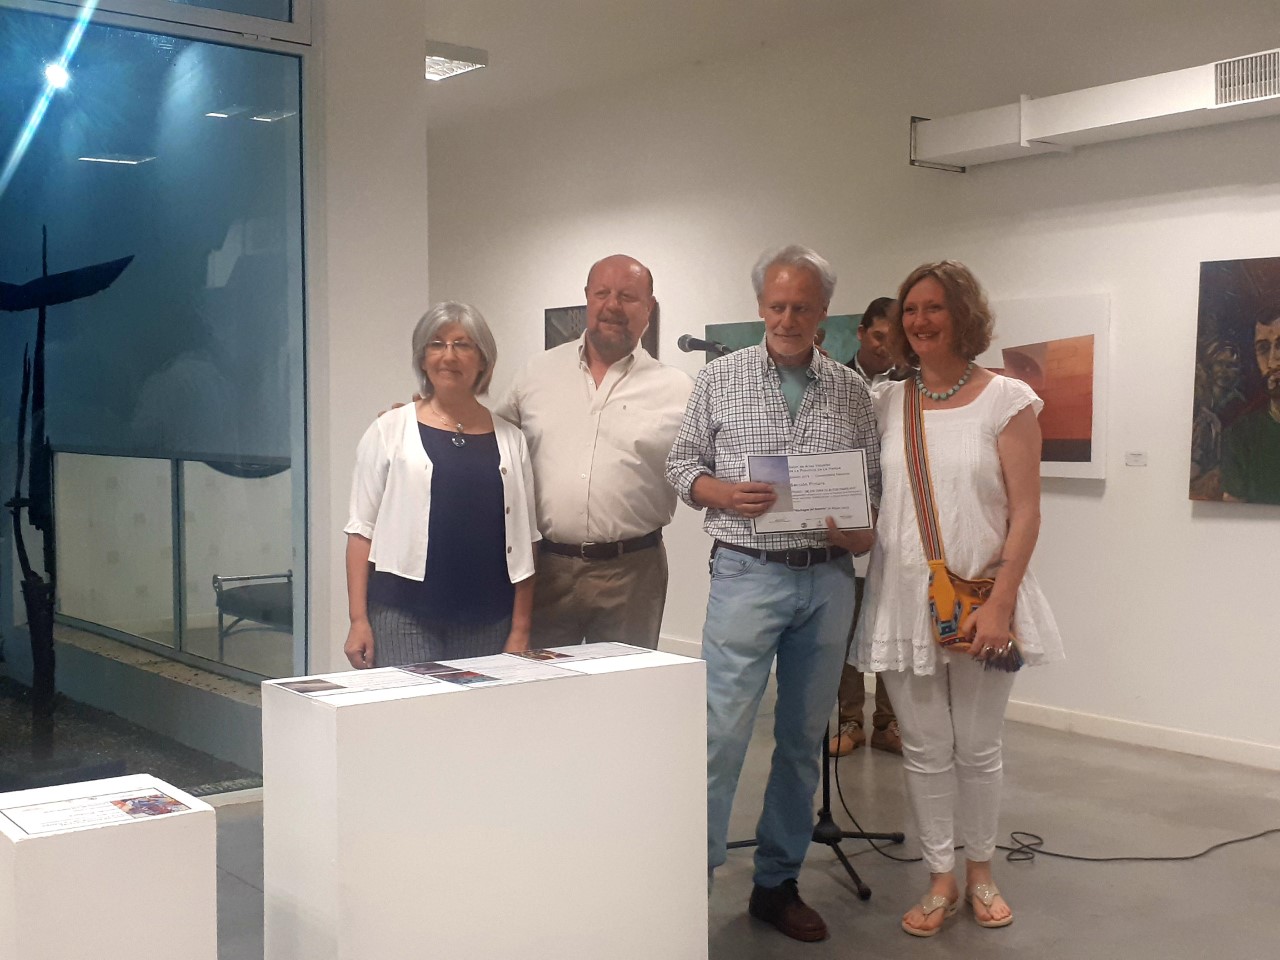 Quedó inaugurado el Salón de Artes Visuales - Sección Pintura 2019